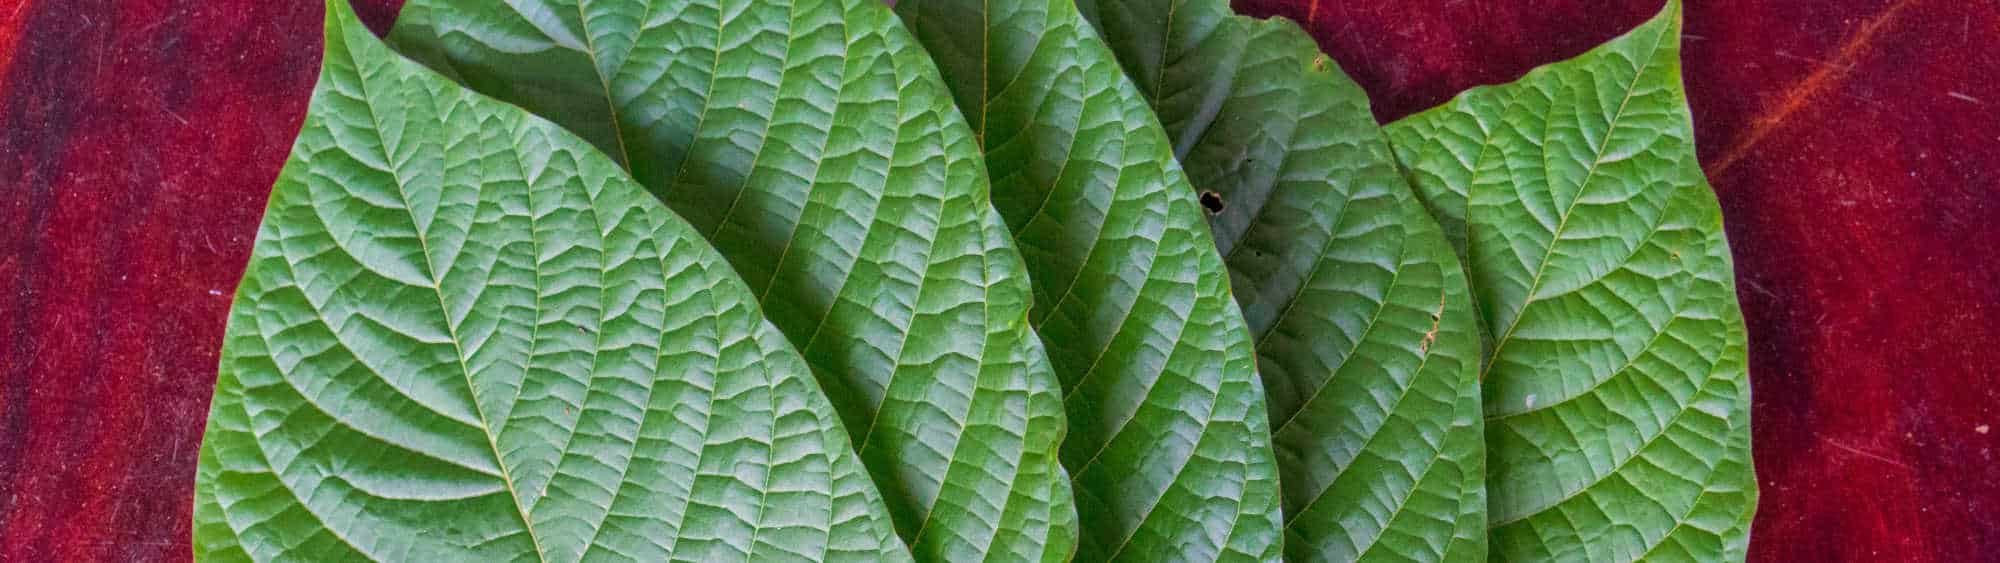 image of kratom leaves 